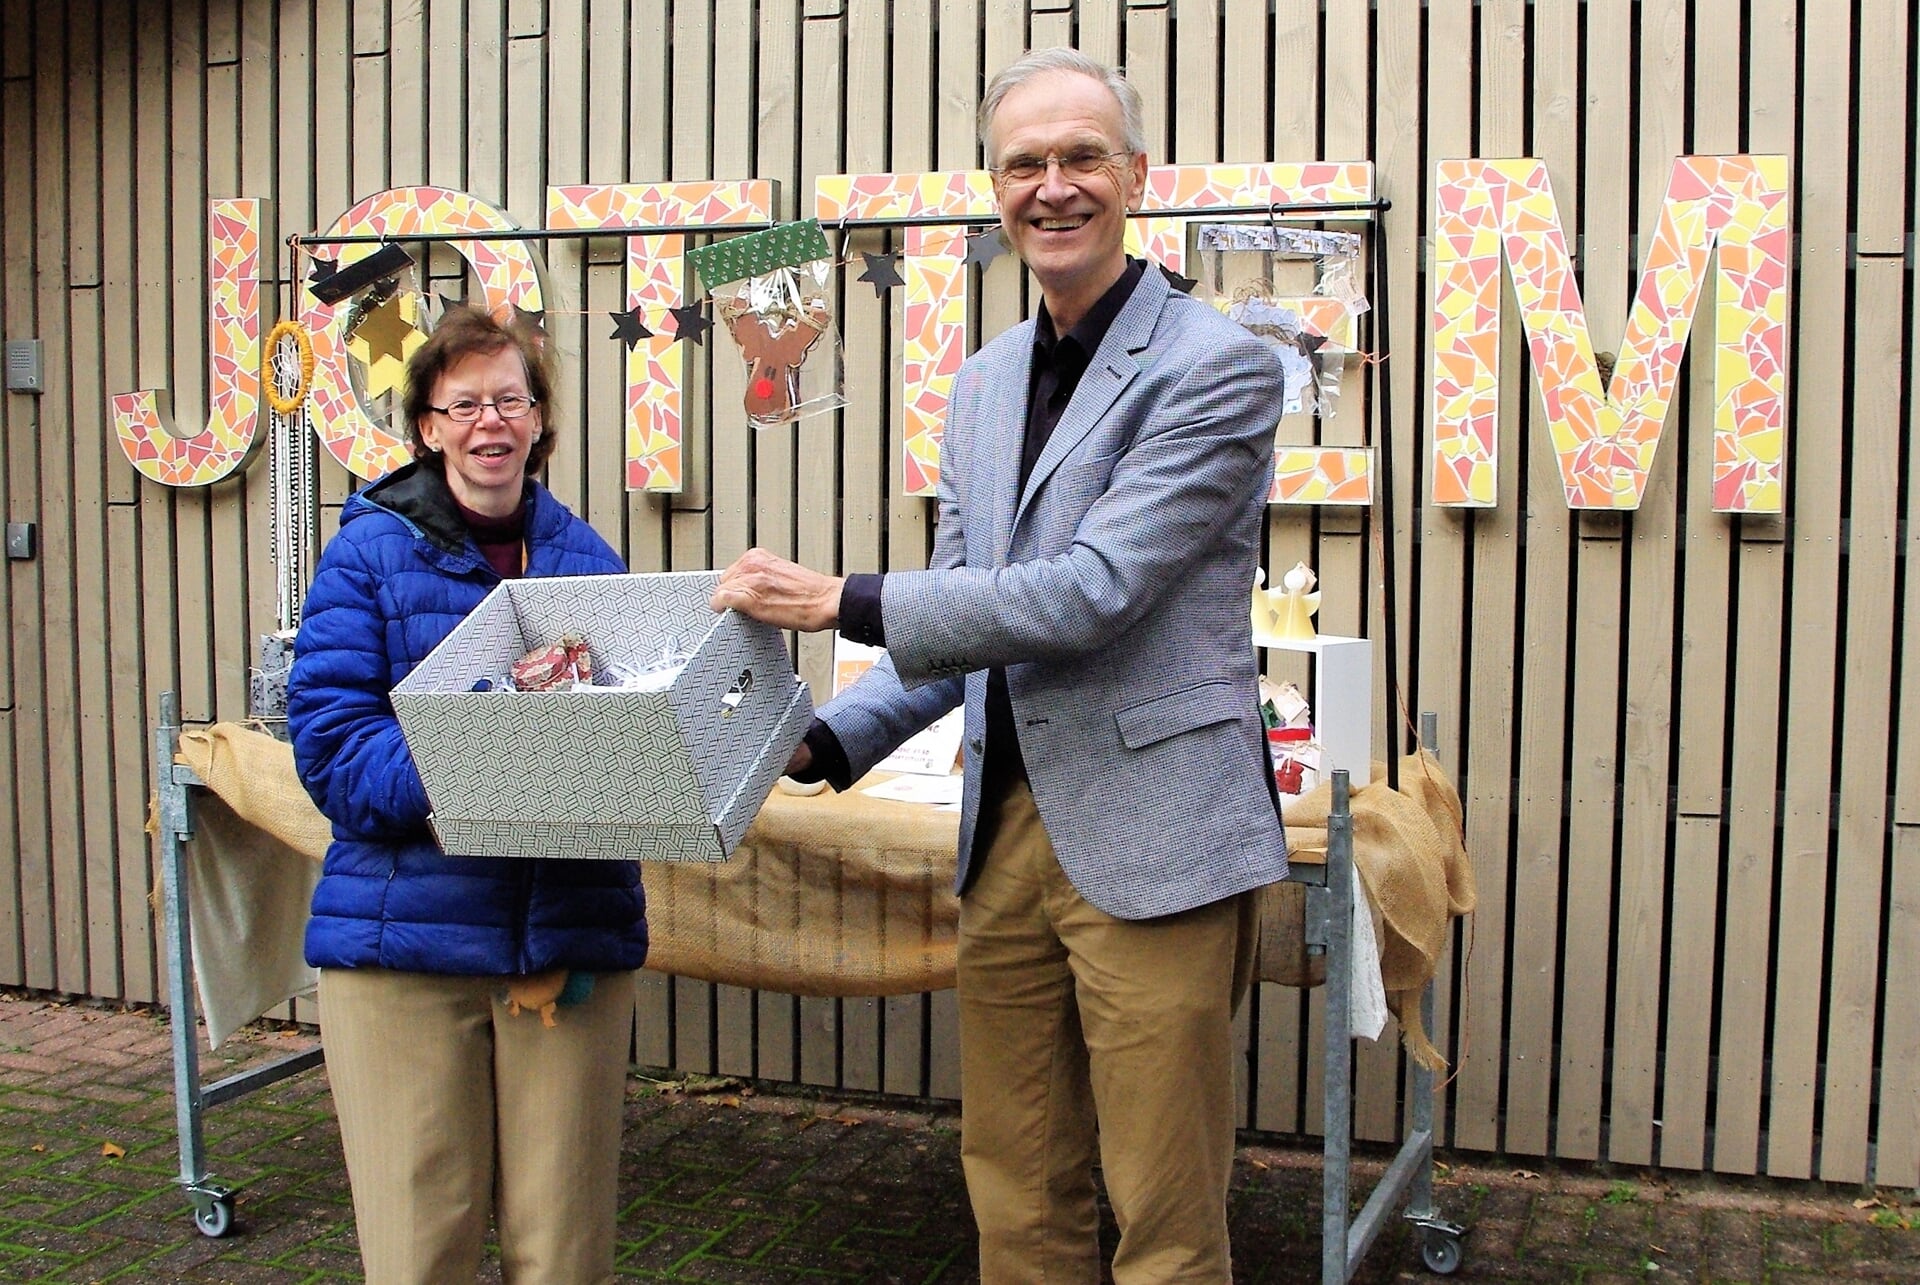 Op maandag 8 november ontving wethouder Nieuwenhuis uit handen van Mariëlla het eerste cadeaupakket voor mantelzorgers.